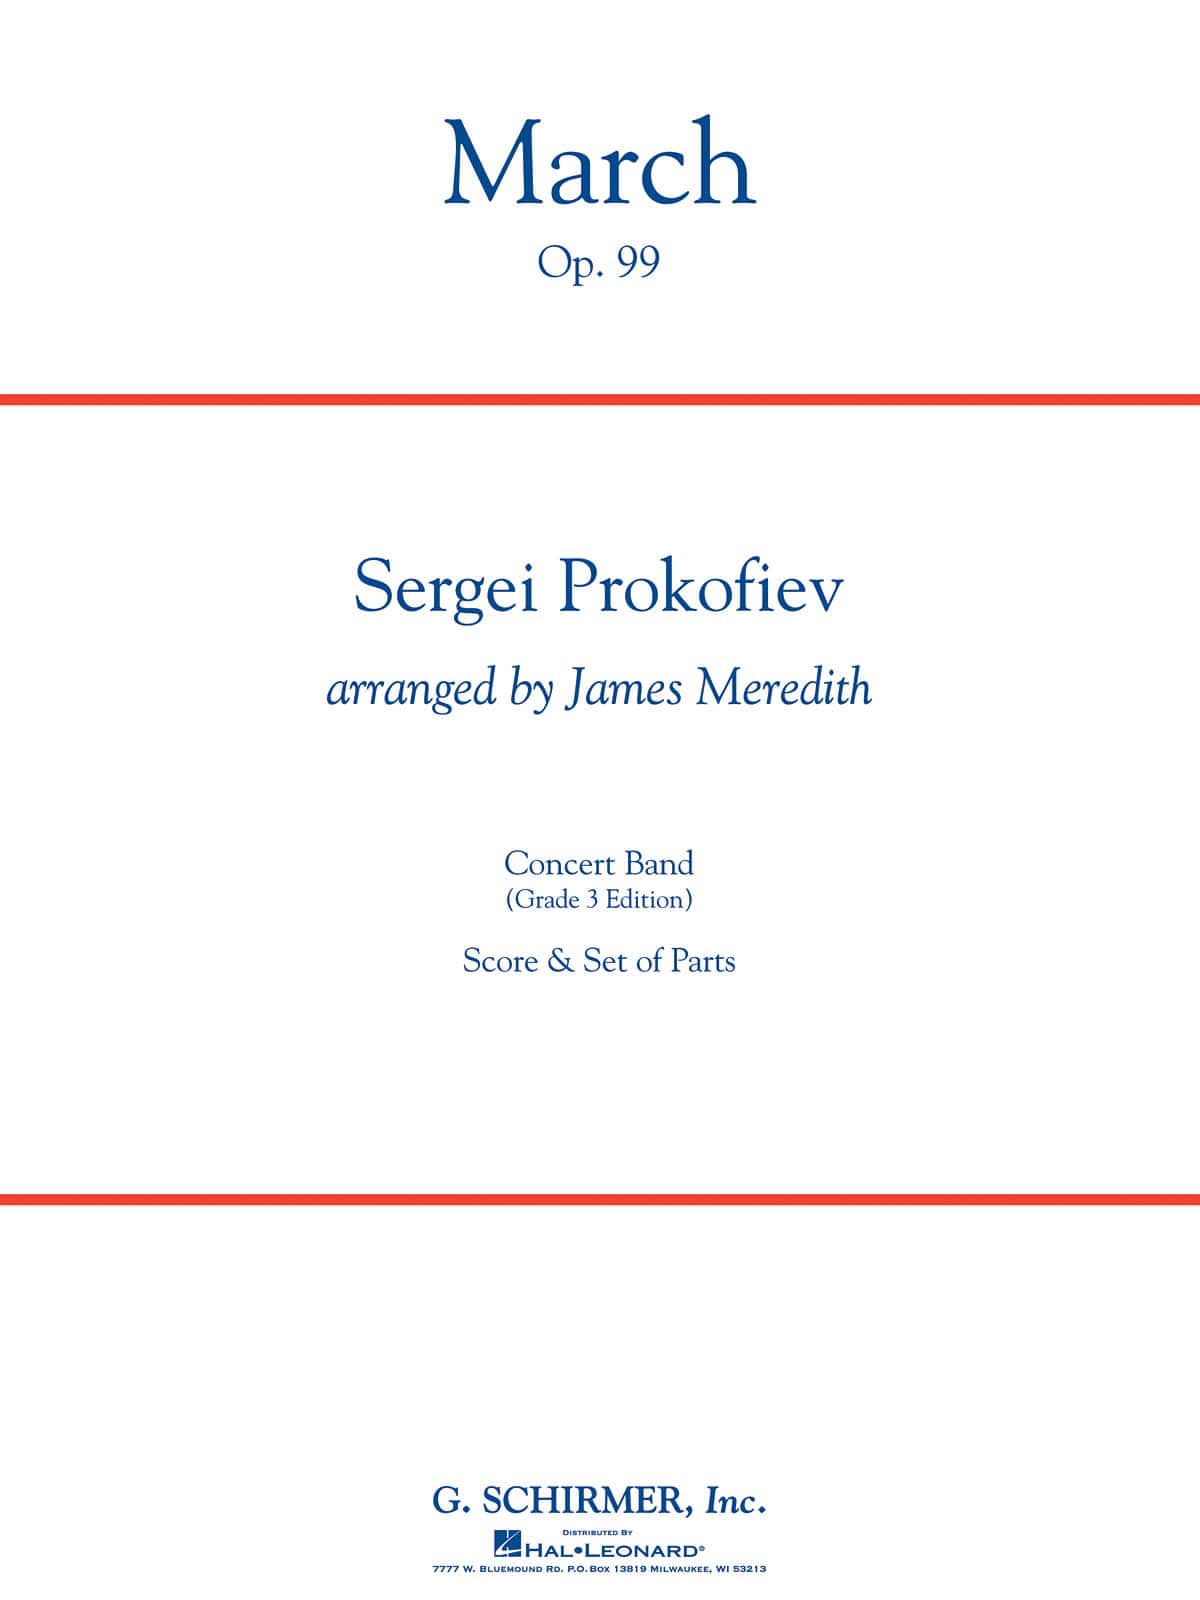 DEHASKE PROKOFIEV S. - MARCH OP.99 - SCORE & PARTS 